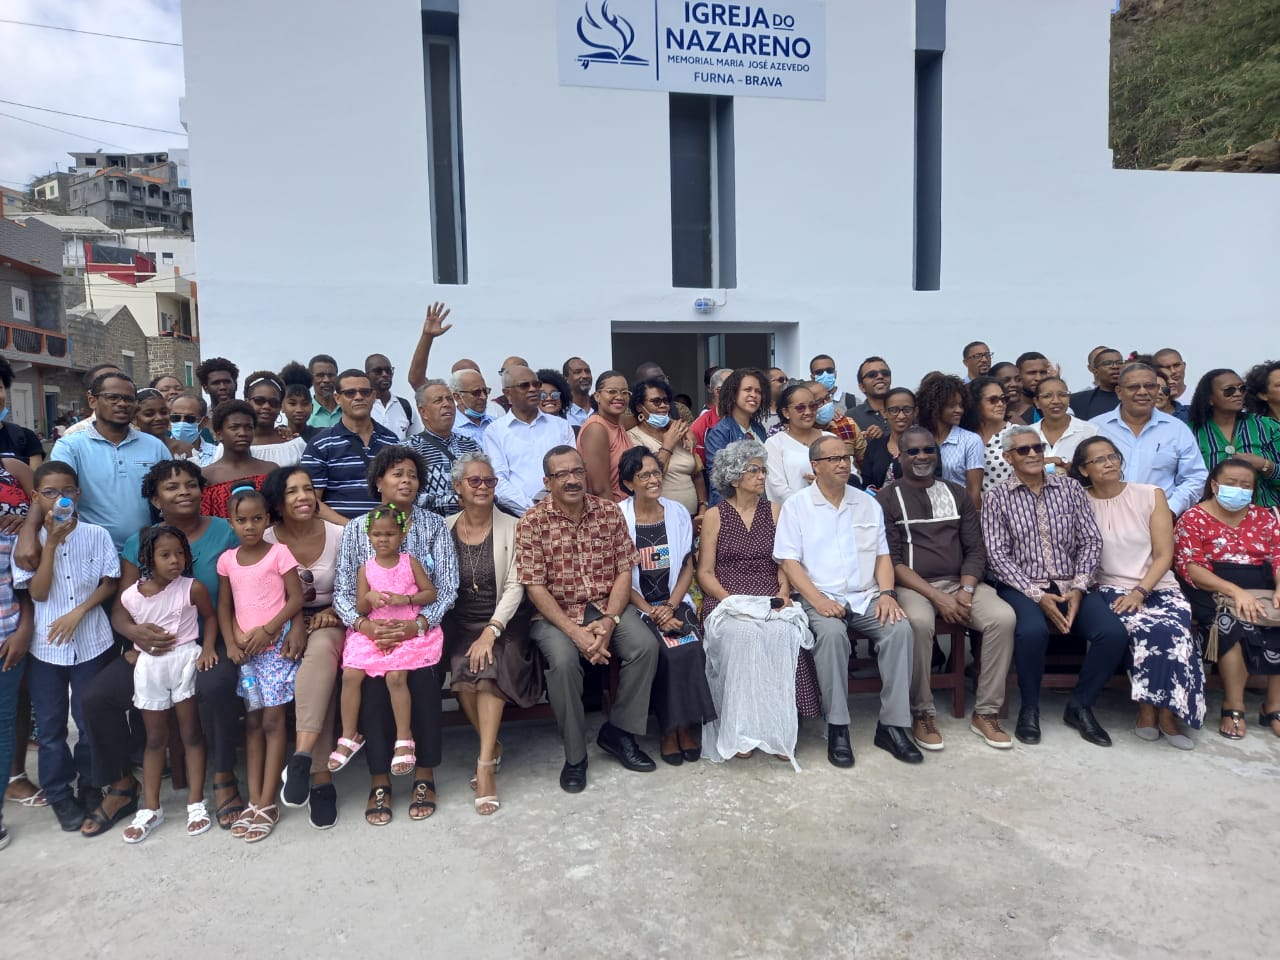 A Igreja do Nazareno em Cabo Verde celebra 120 anos!